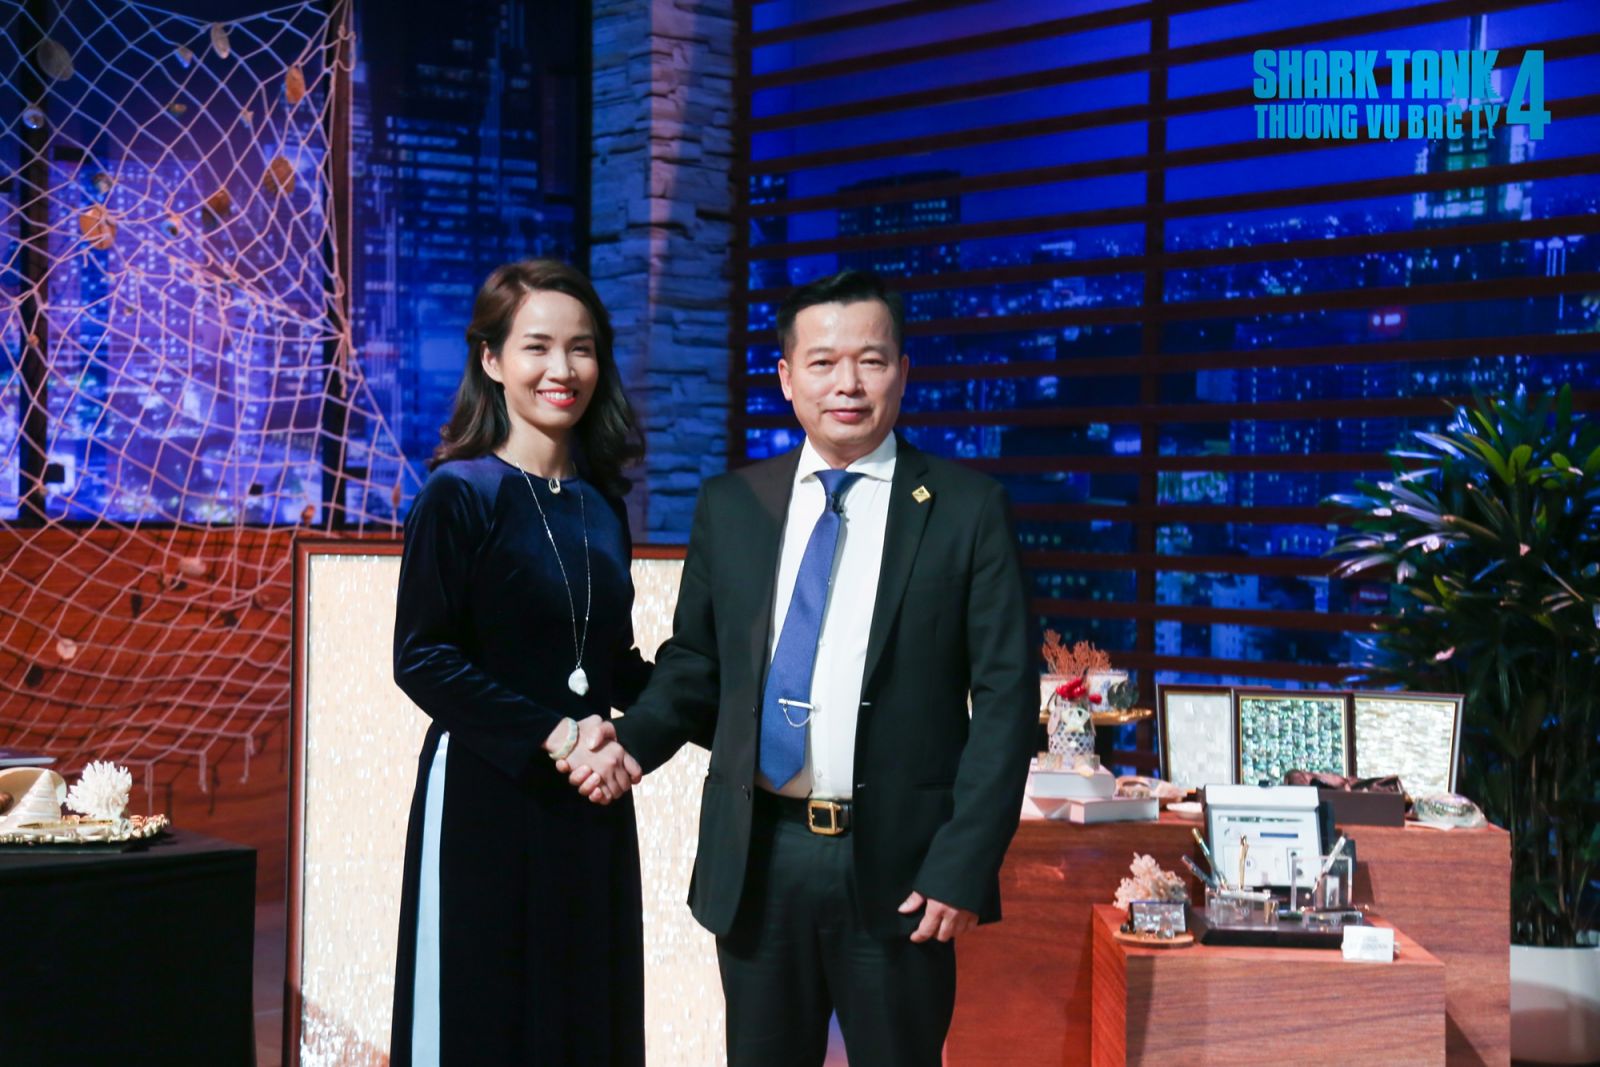 Nữ CEO Tôn Nữ Xuân Quyên nhận được đầu tư 4 tỷ cho 32% cổ phần từ Shark Việt. Nguồn: Internet